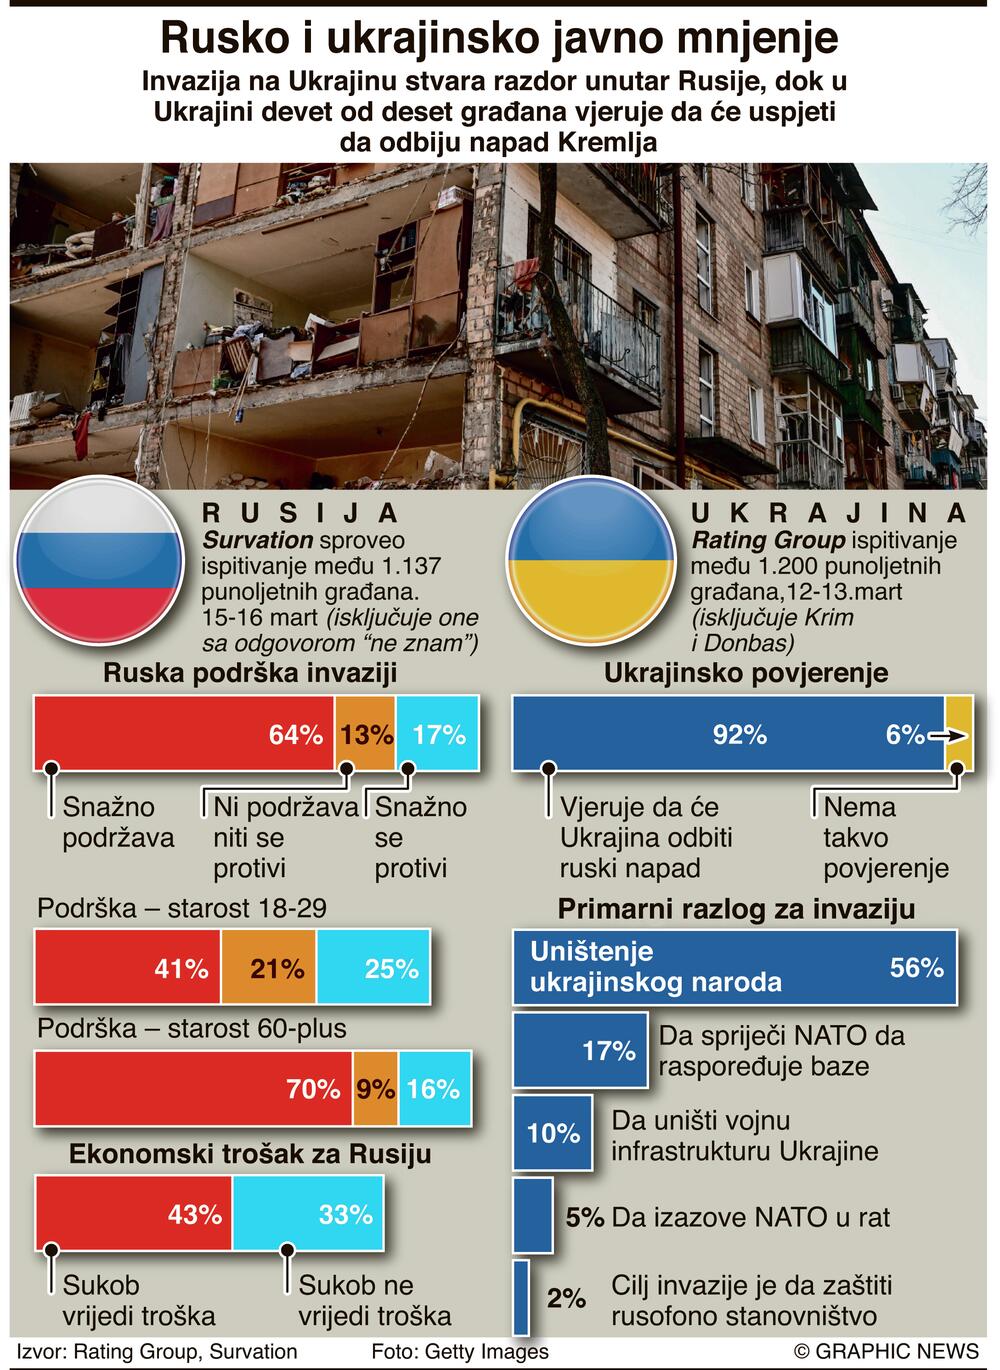 Rezultati anketa u Rusiji i Ukrajini povodom invazije